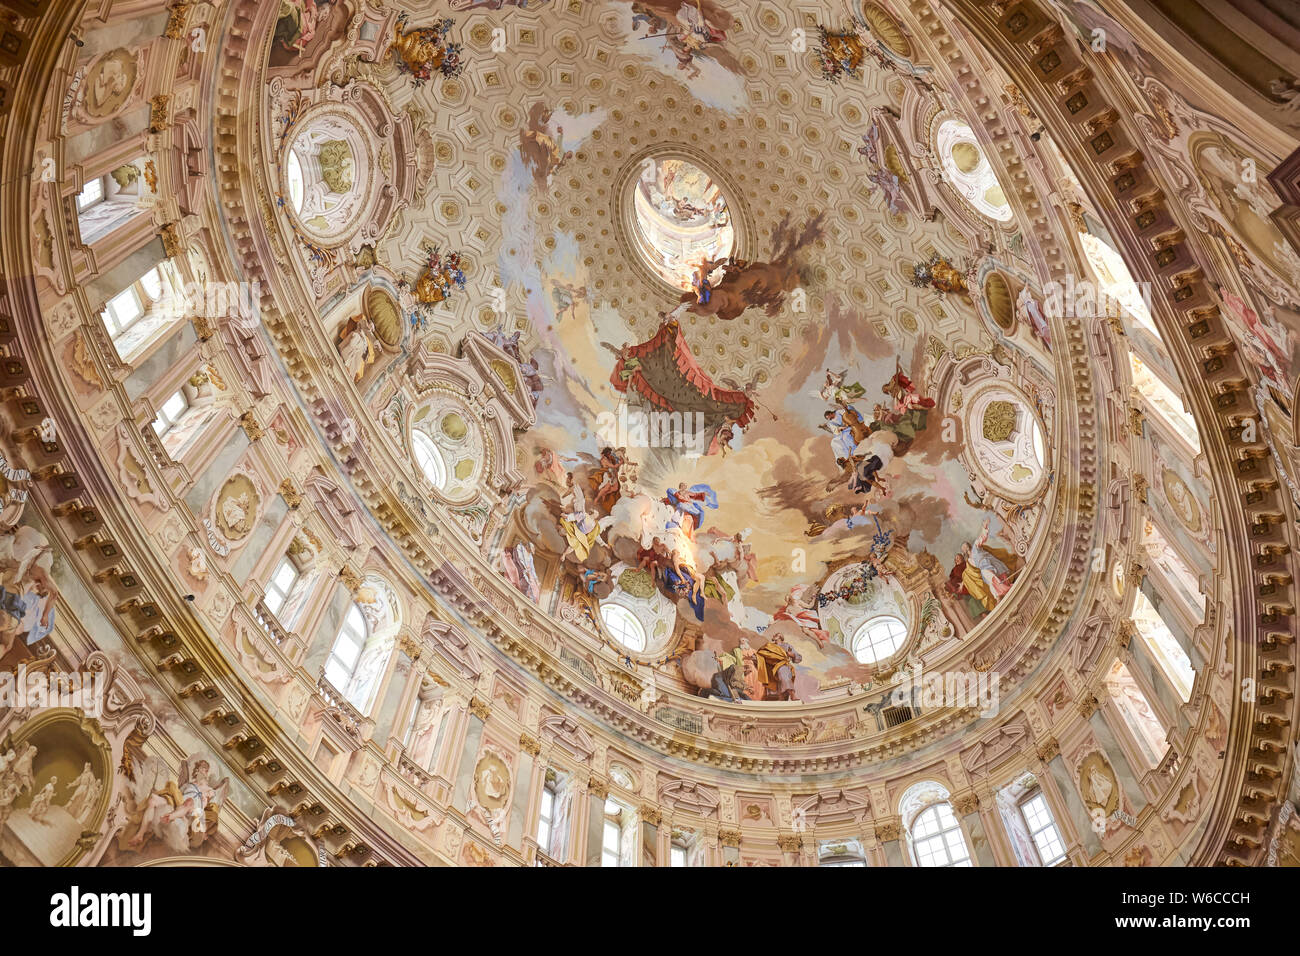 Vicoforte, Italie - 17 août 2016 : Sanctuaire de Vicoforte baroque avec des fresques du dôme elliptique en Piémont, Italie Banque D'Images